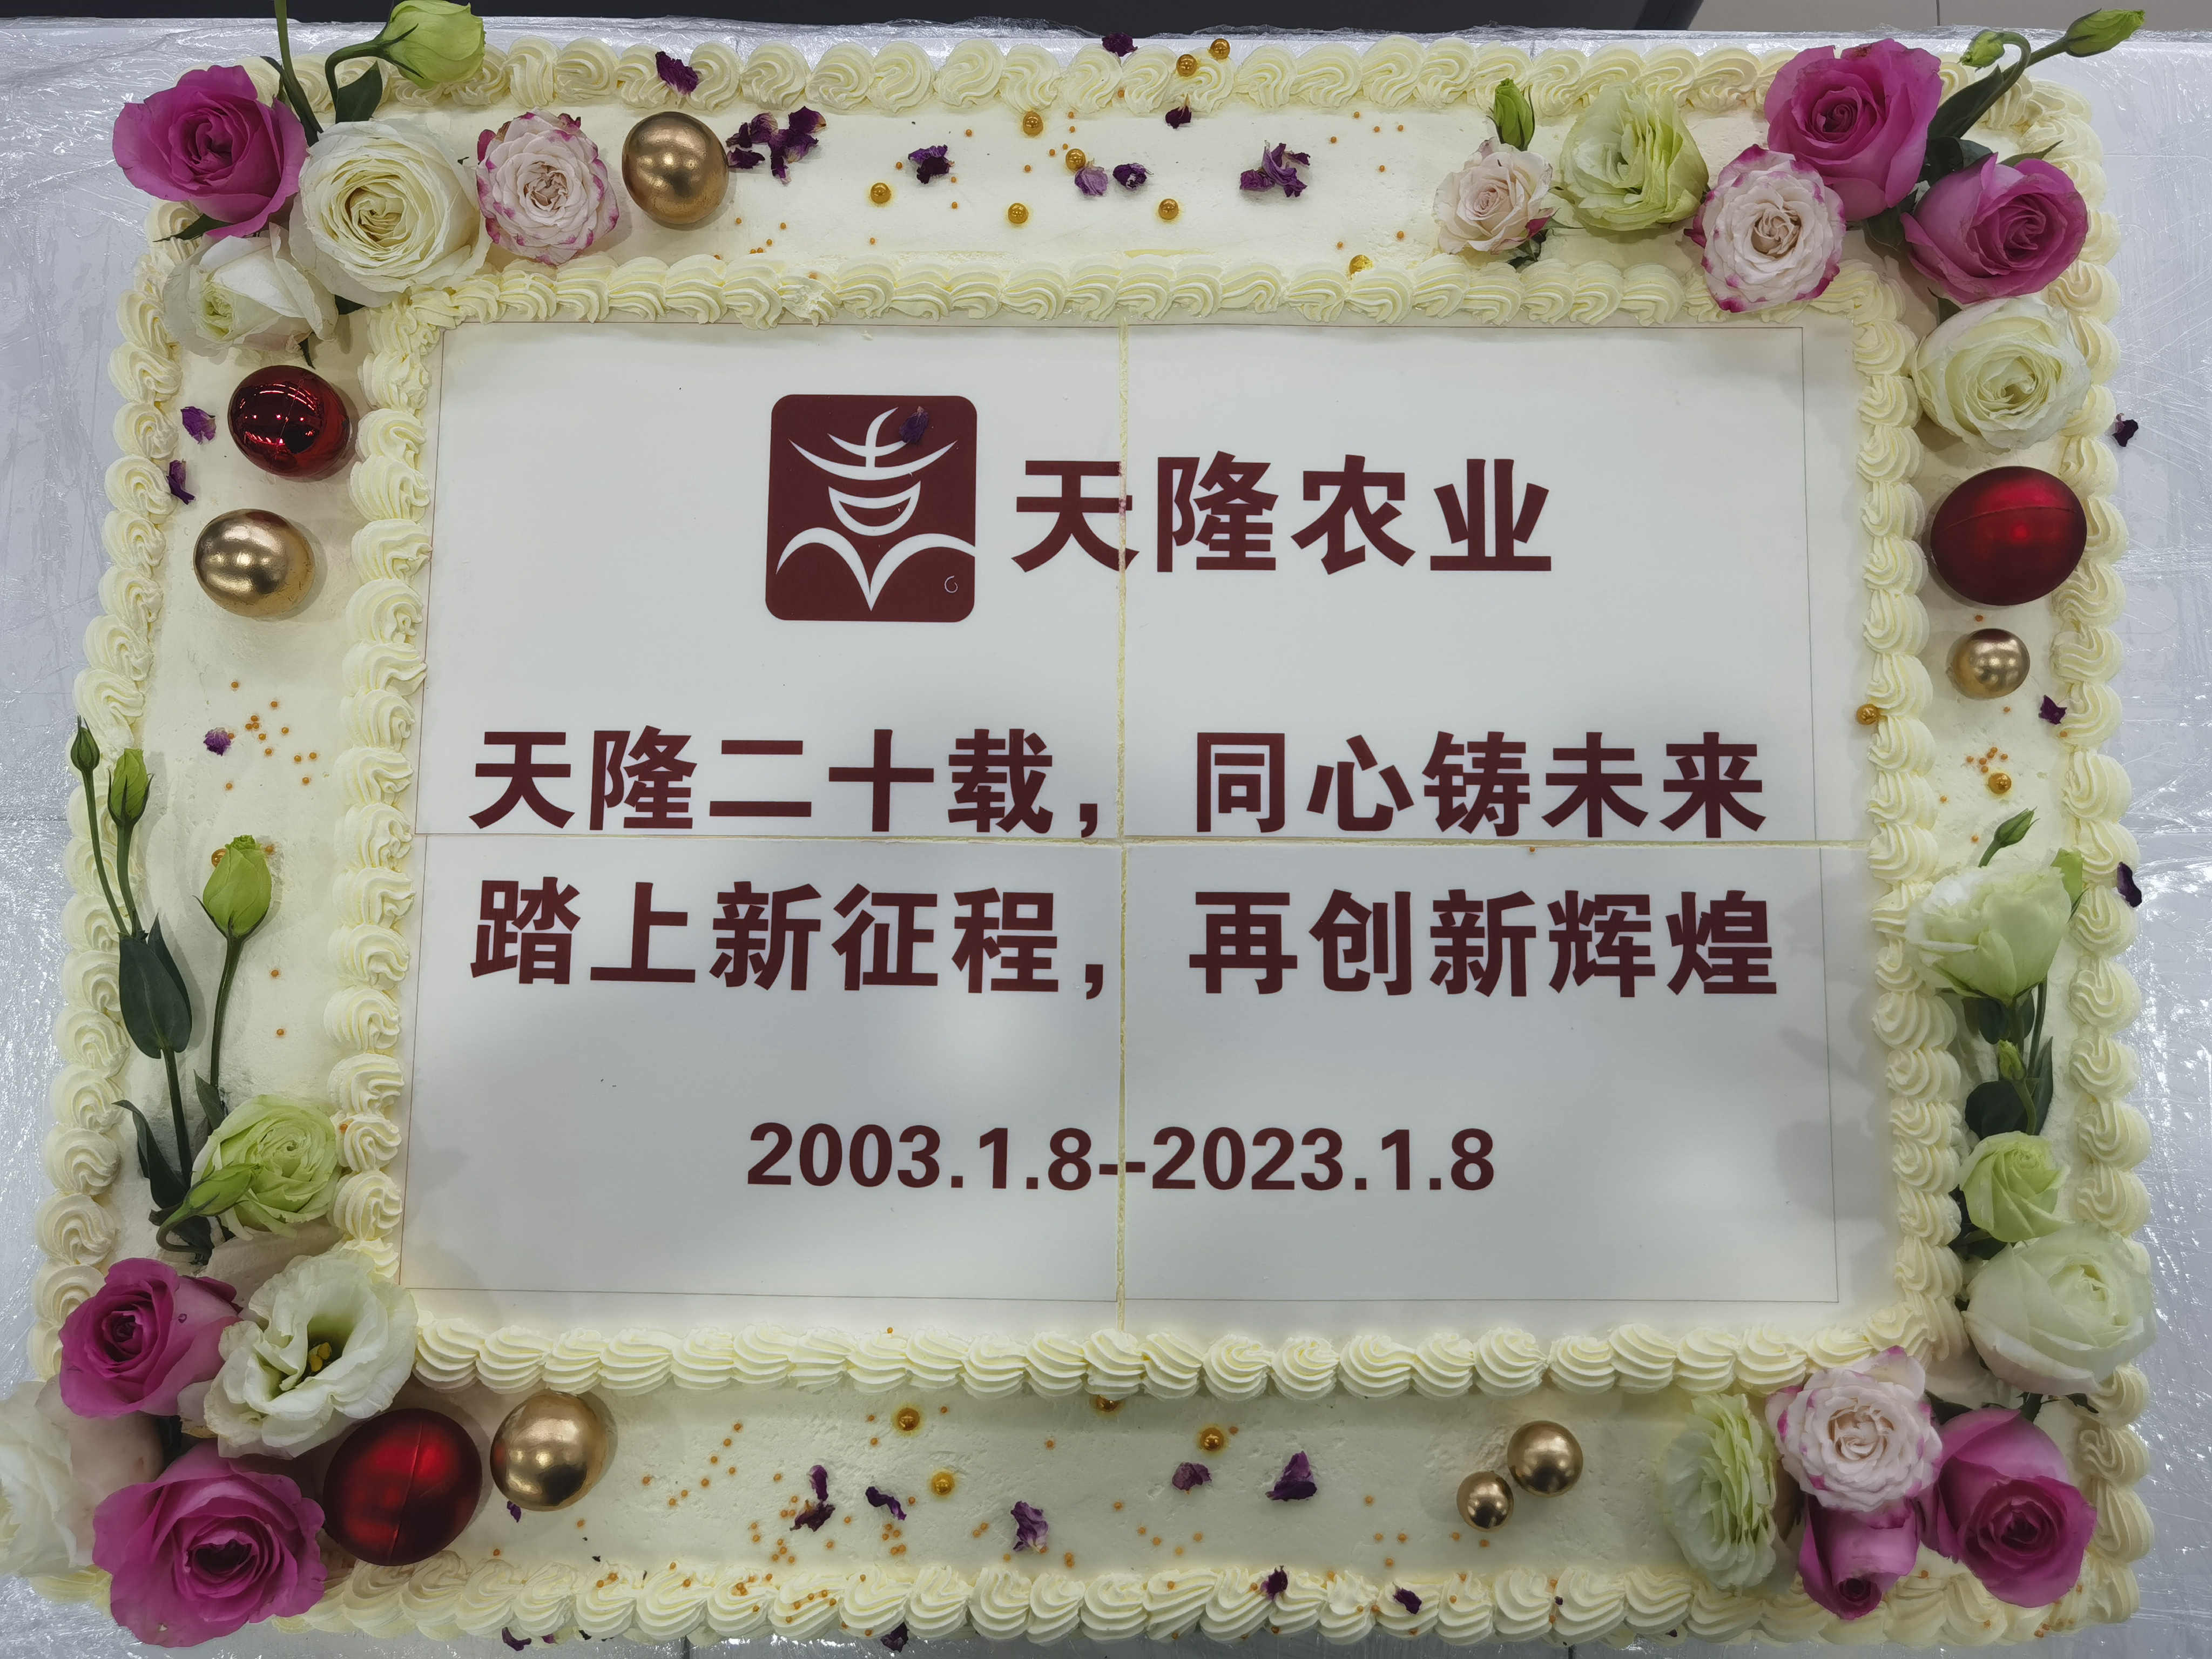 隆重庆贺天隆公司成立20周年